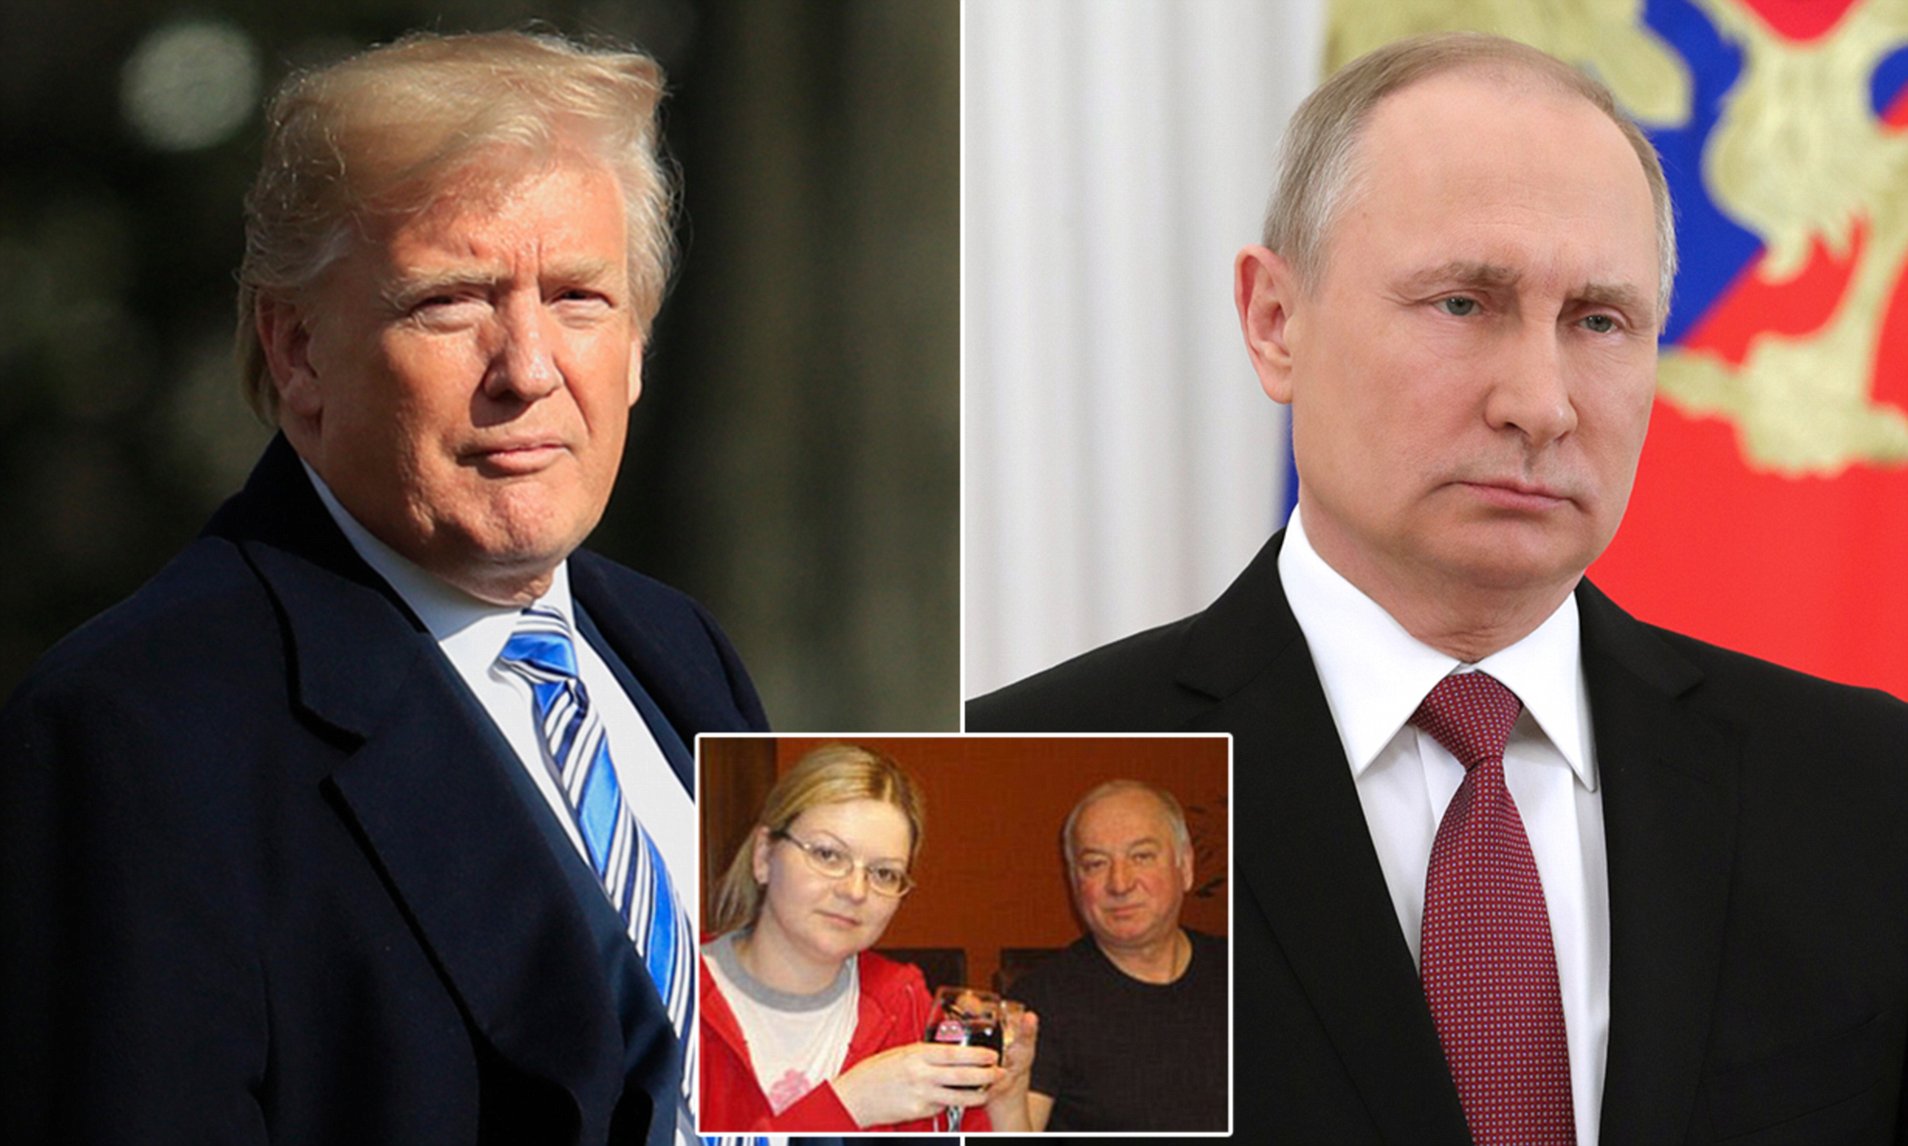 El presidente Trump ‘expulsará a docenas de diplomáticos rusos en solidaridad con el Reino Unido’ a raíz del caso del ex espía envenenado